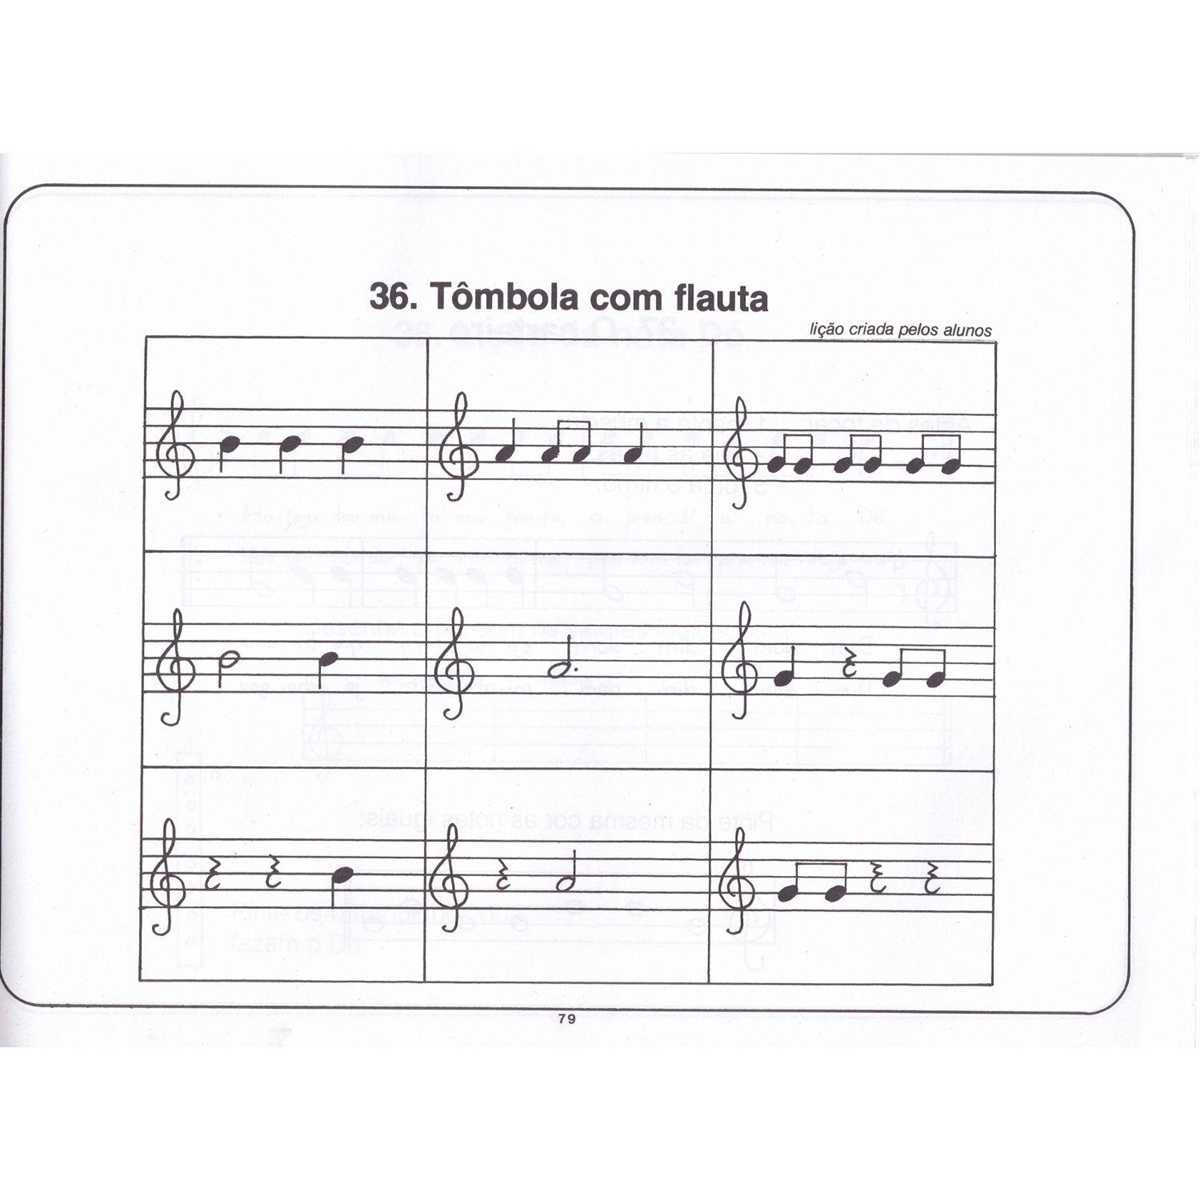 Kit de Iniciação Musical com Caderninhos de Notas e Plaquinhas Didáticas